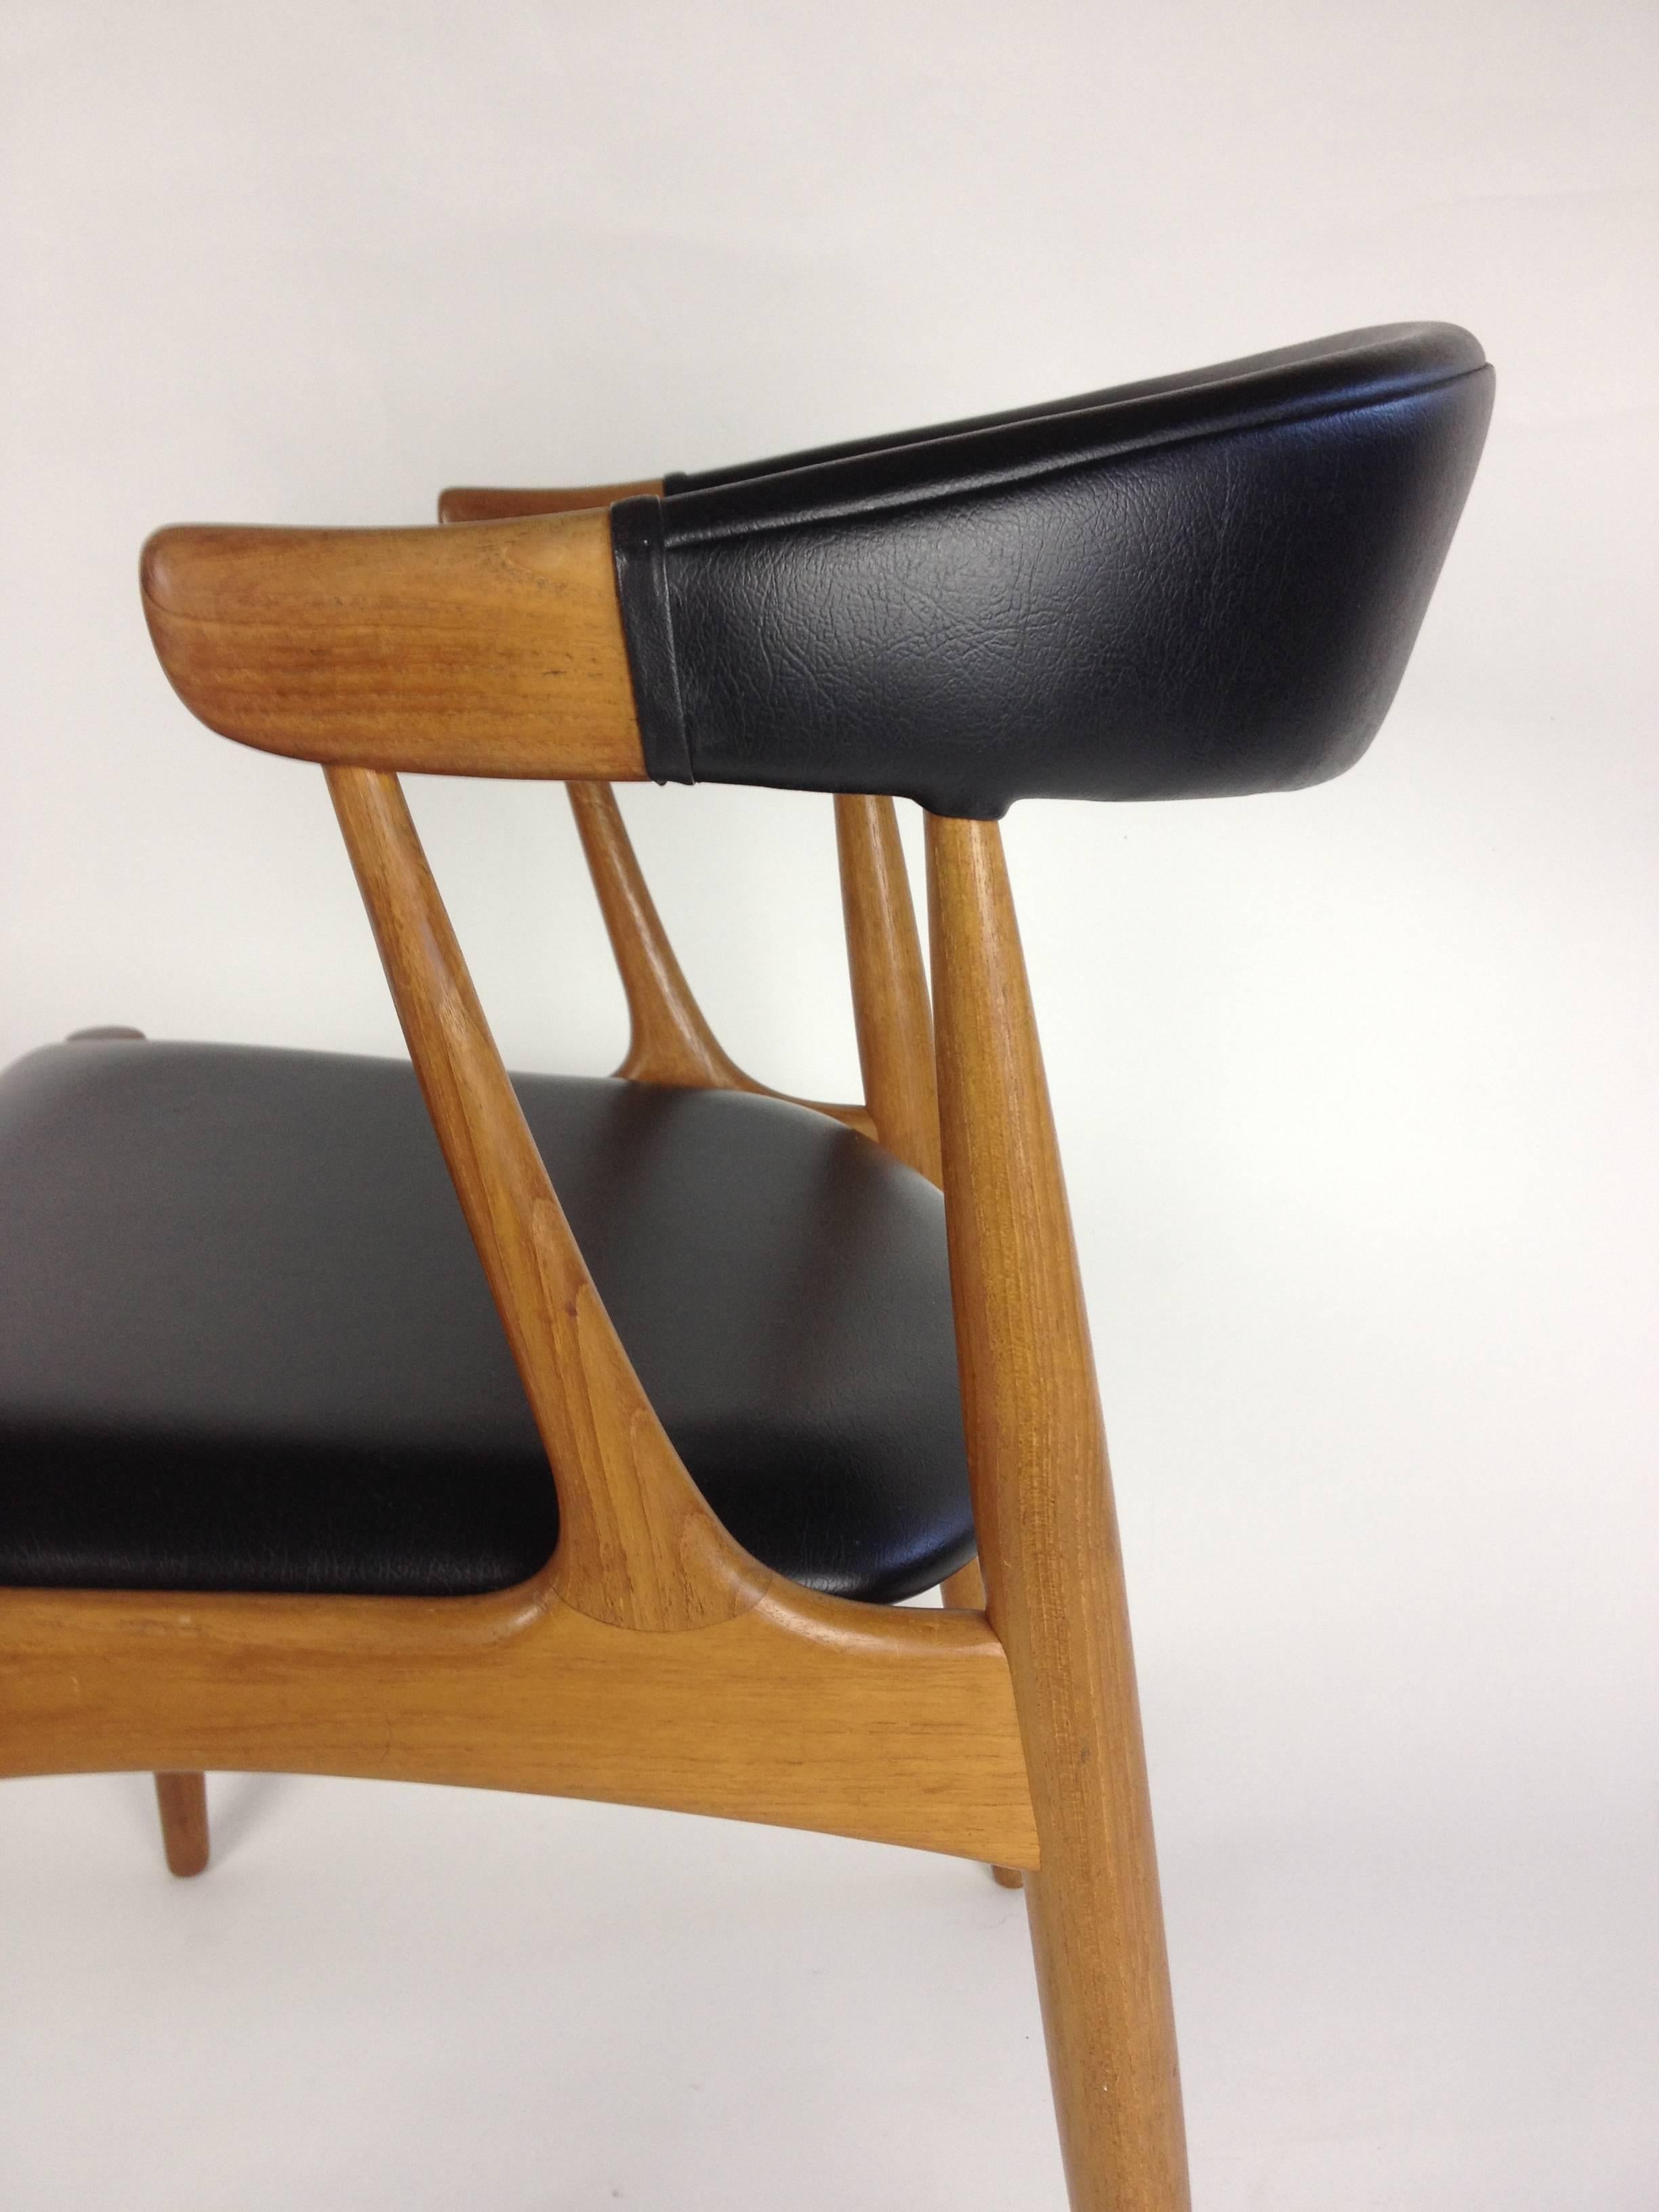 Danish Striking Mid-Century Modern Teak Chair Designed by Johannes Andersen - Denmark For Sale